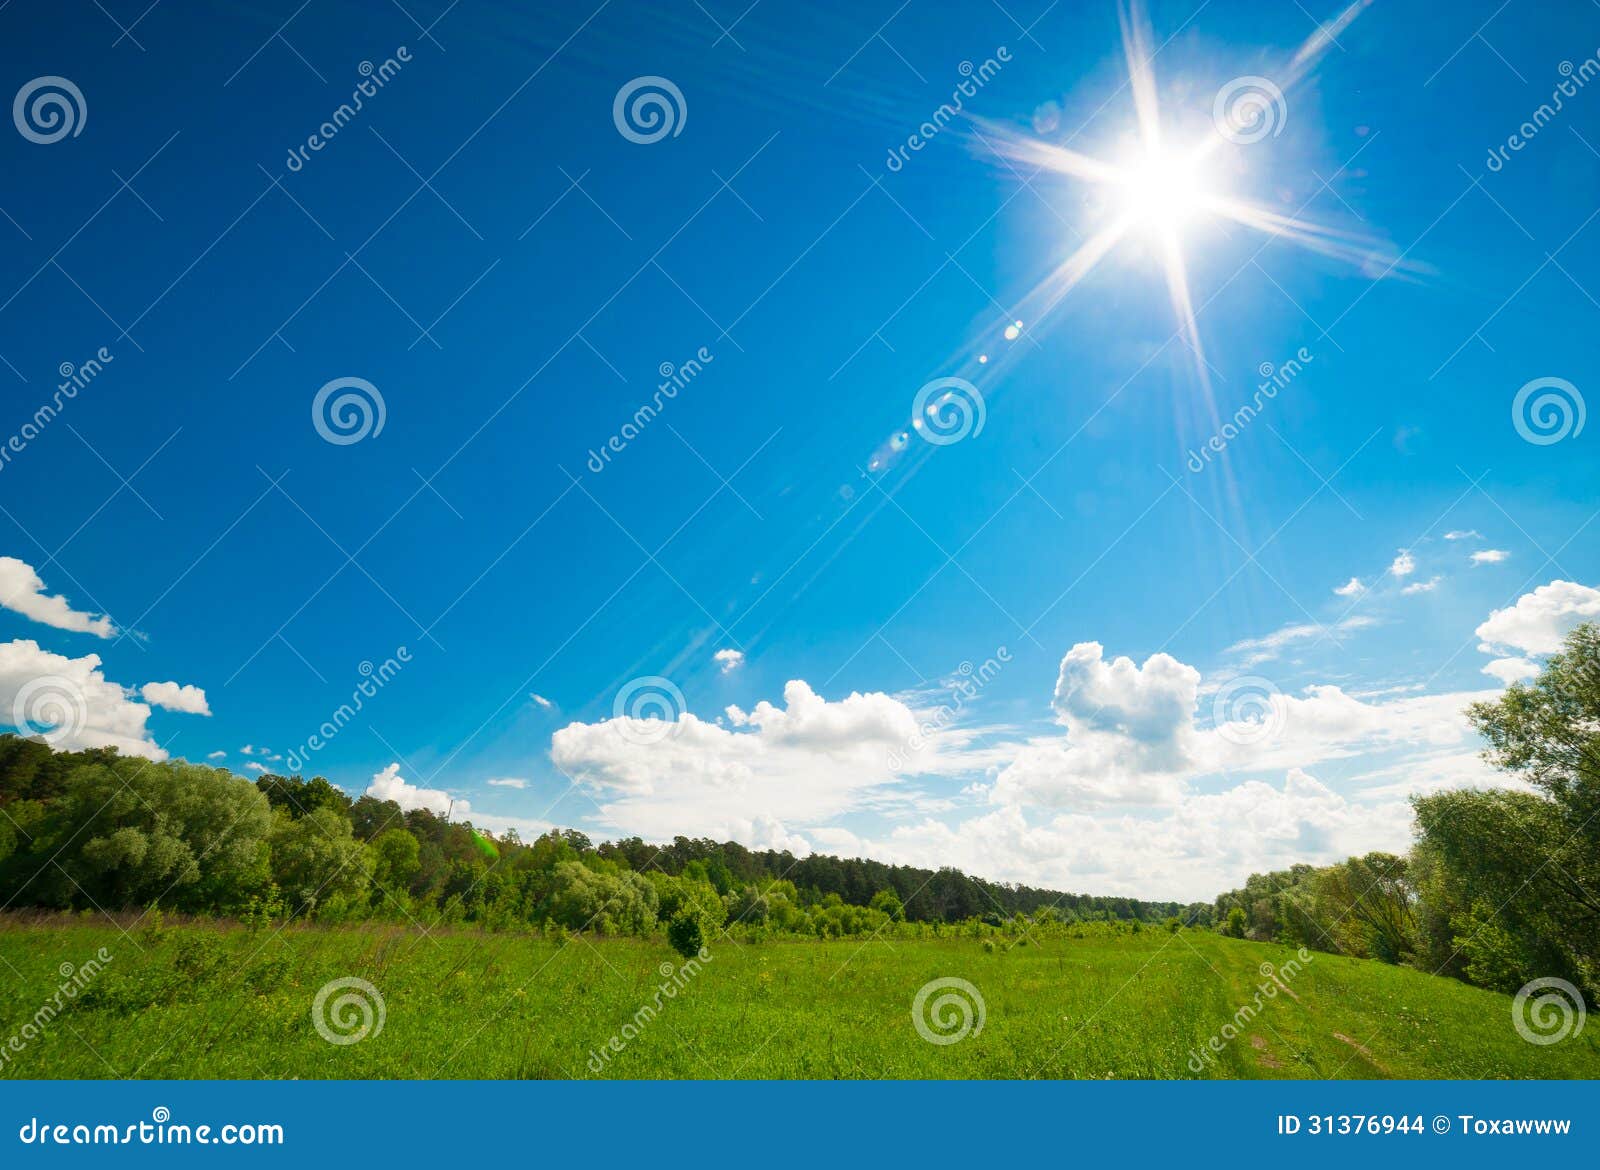 В полдень солнце на юге. Солнце в полдень. Солнце в небе светит ярко. Солнечный полдень фотография. Полуденное солнце фото.